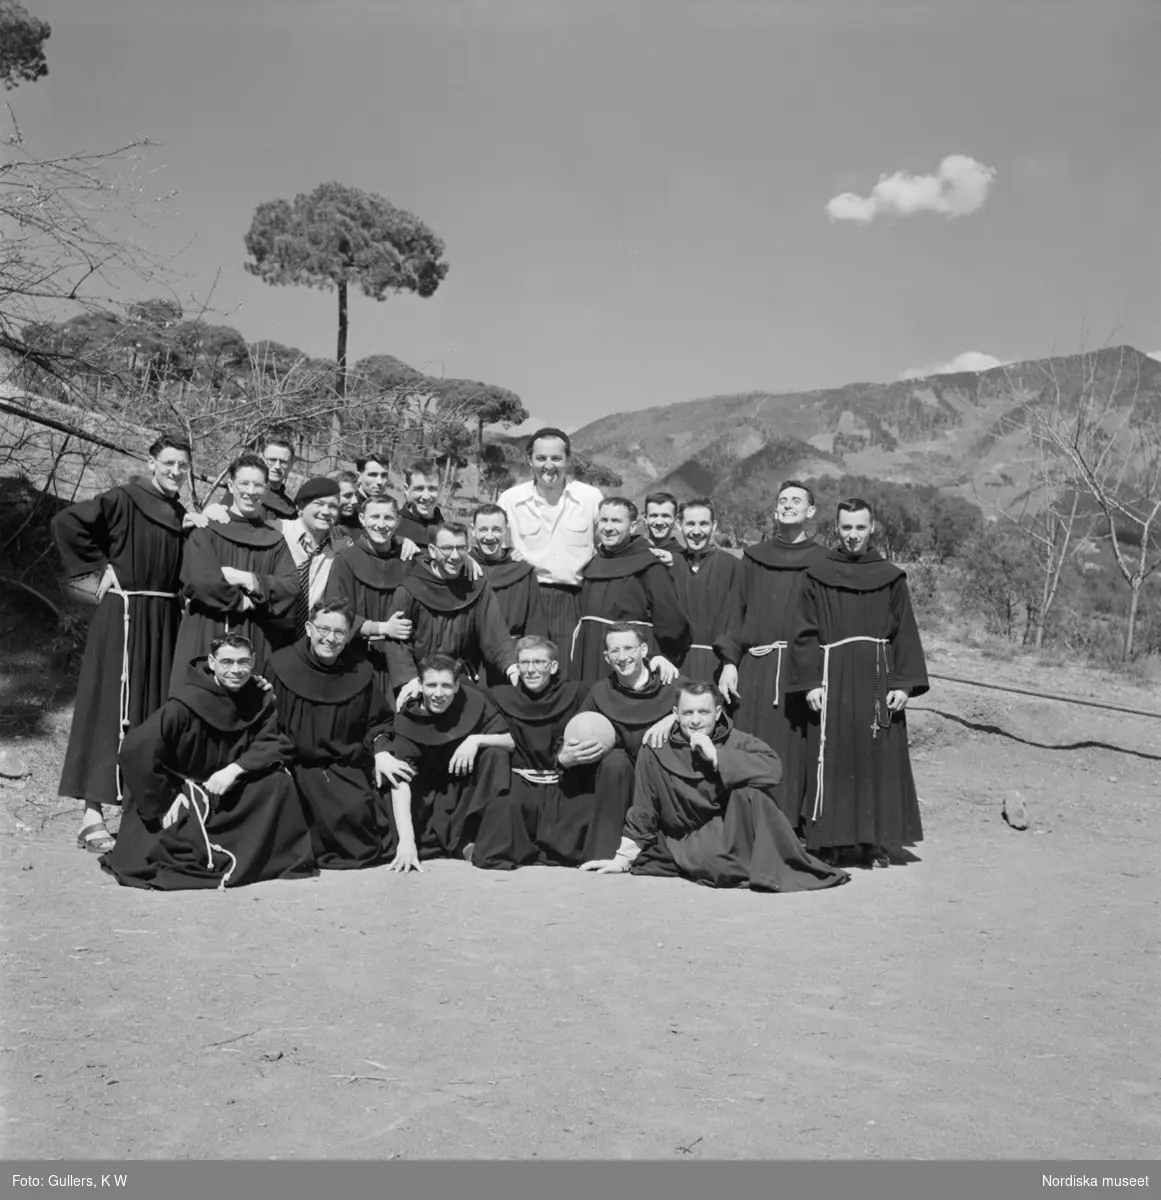 Ett lagfoto på fotbollsspelande munkar, en munk i första ledet håller i en fotboll.